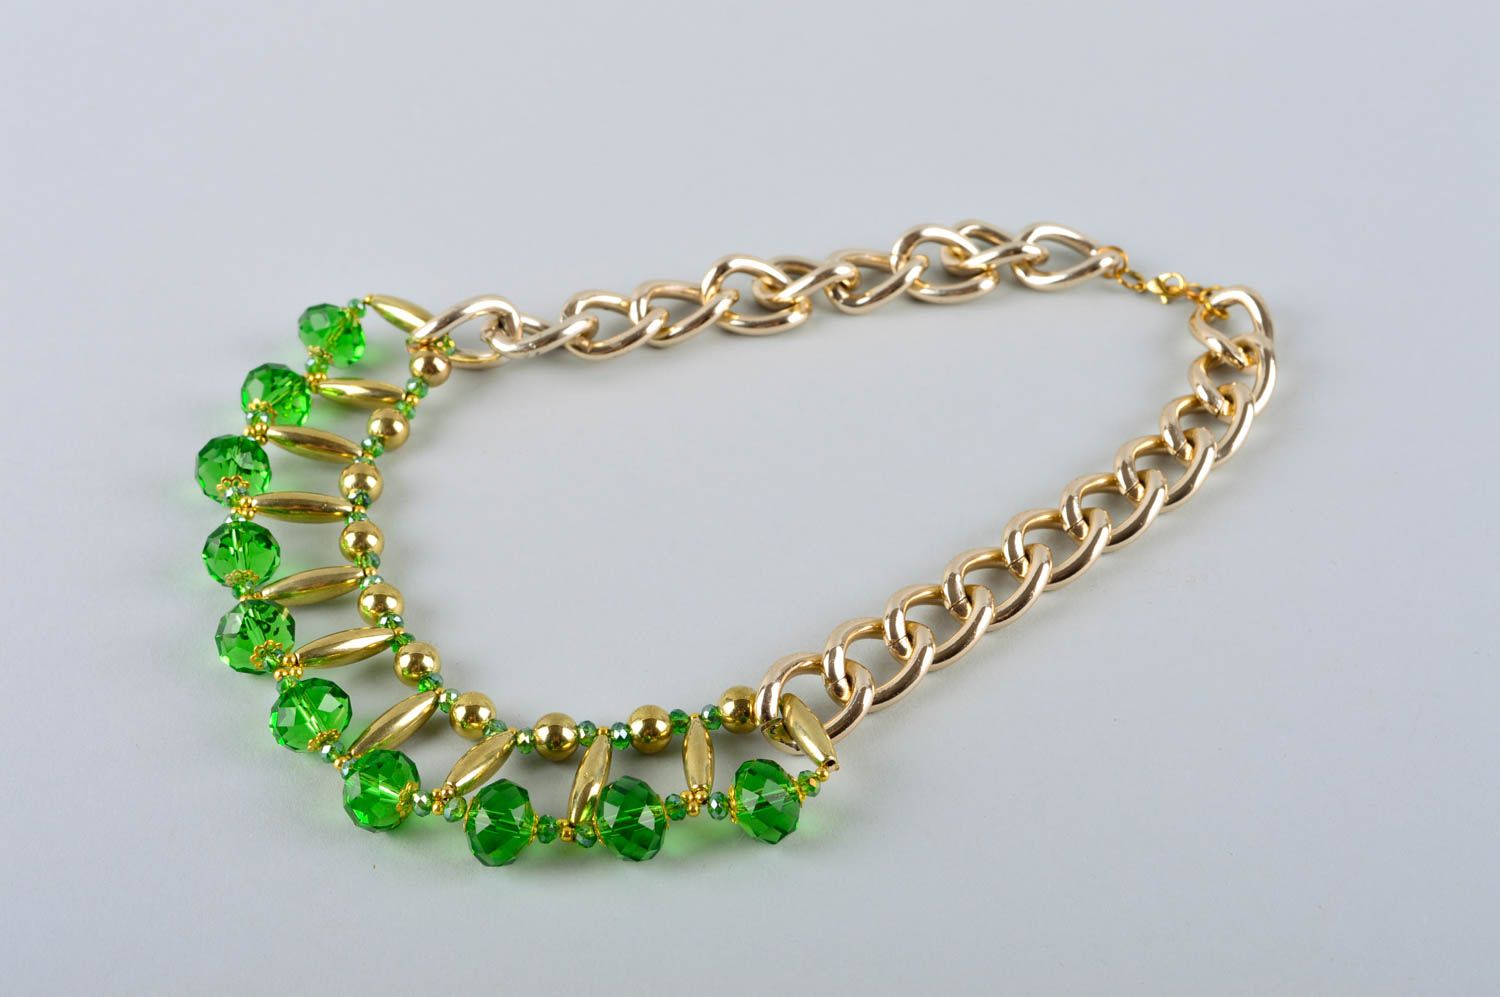 Collier fantaisie Accessoire fait main en métal et cristaux verts Cadeau femme photo 3